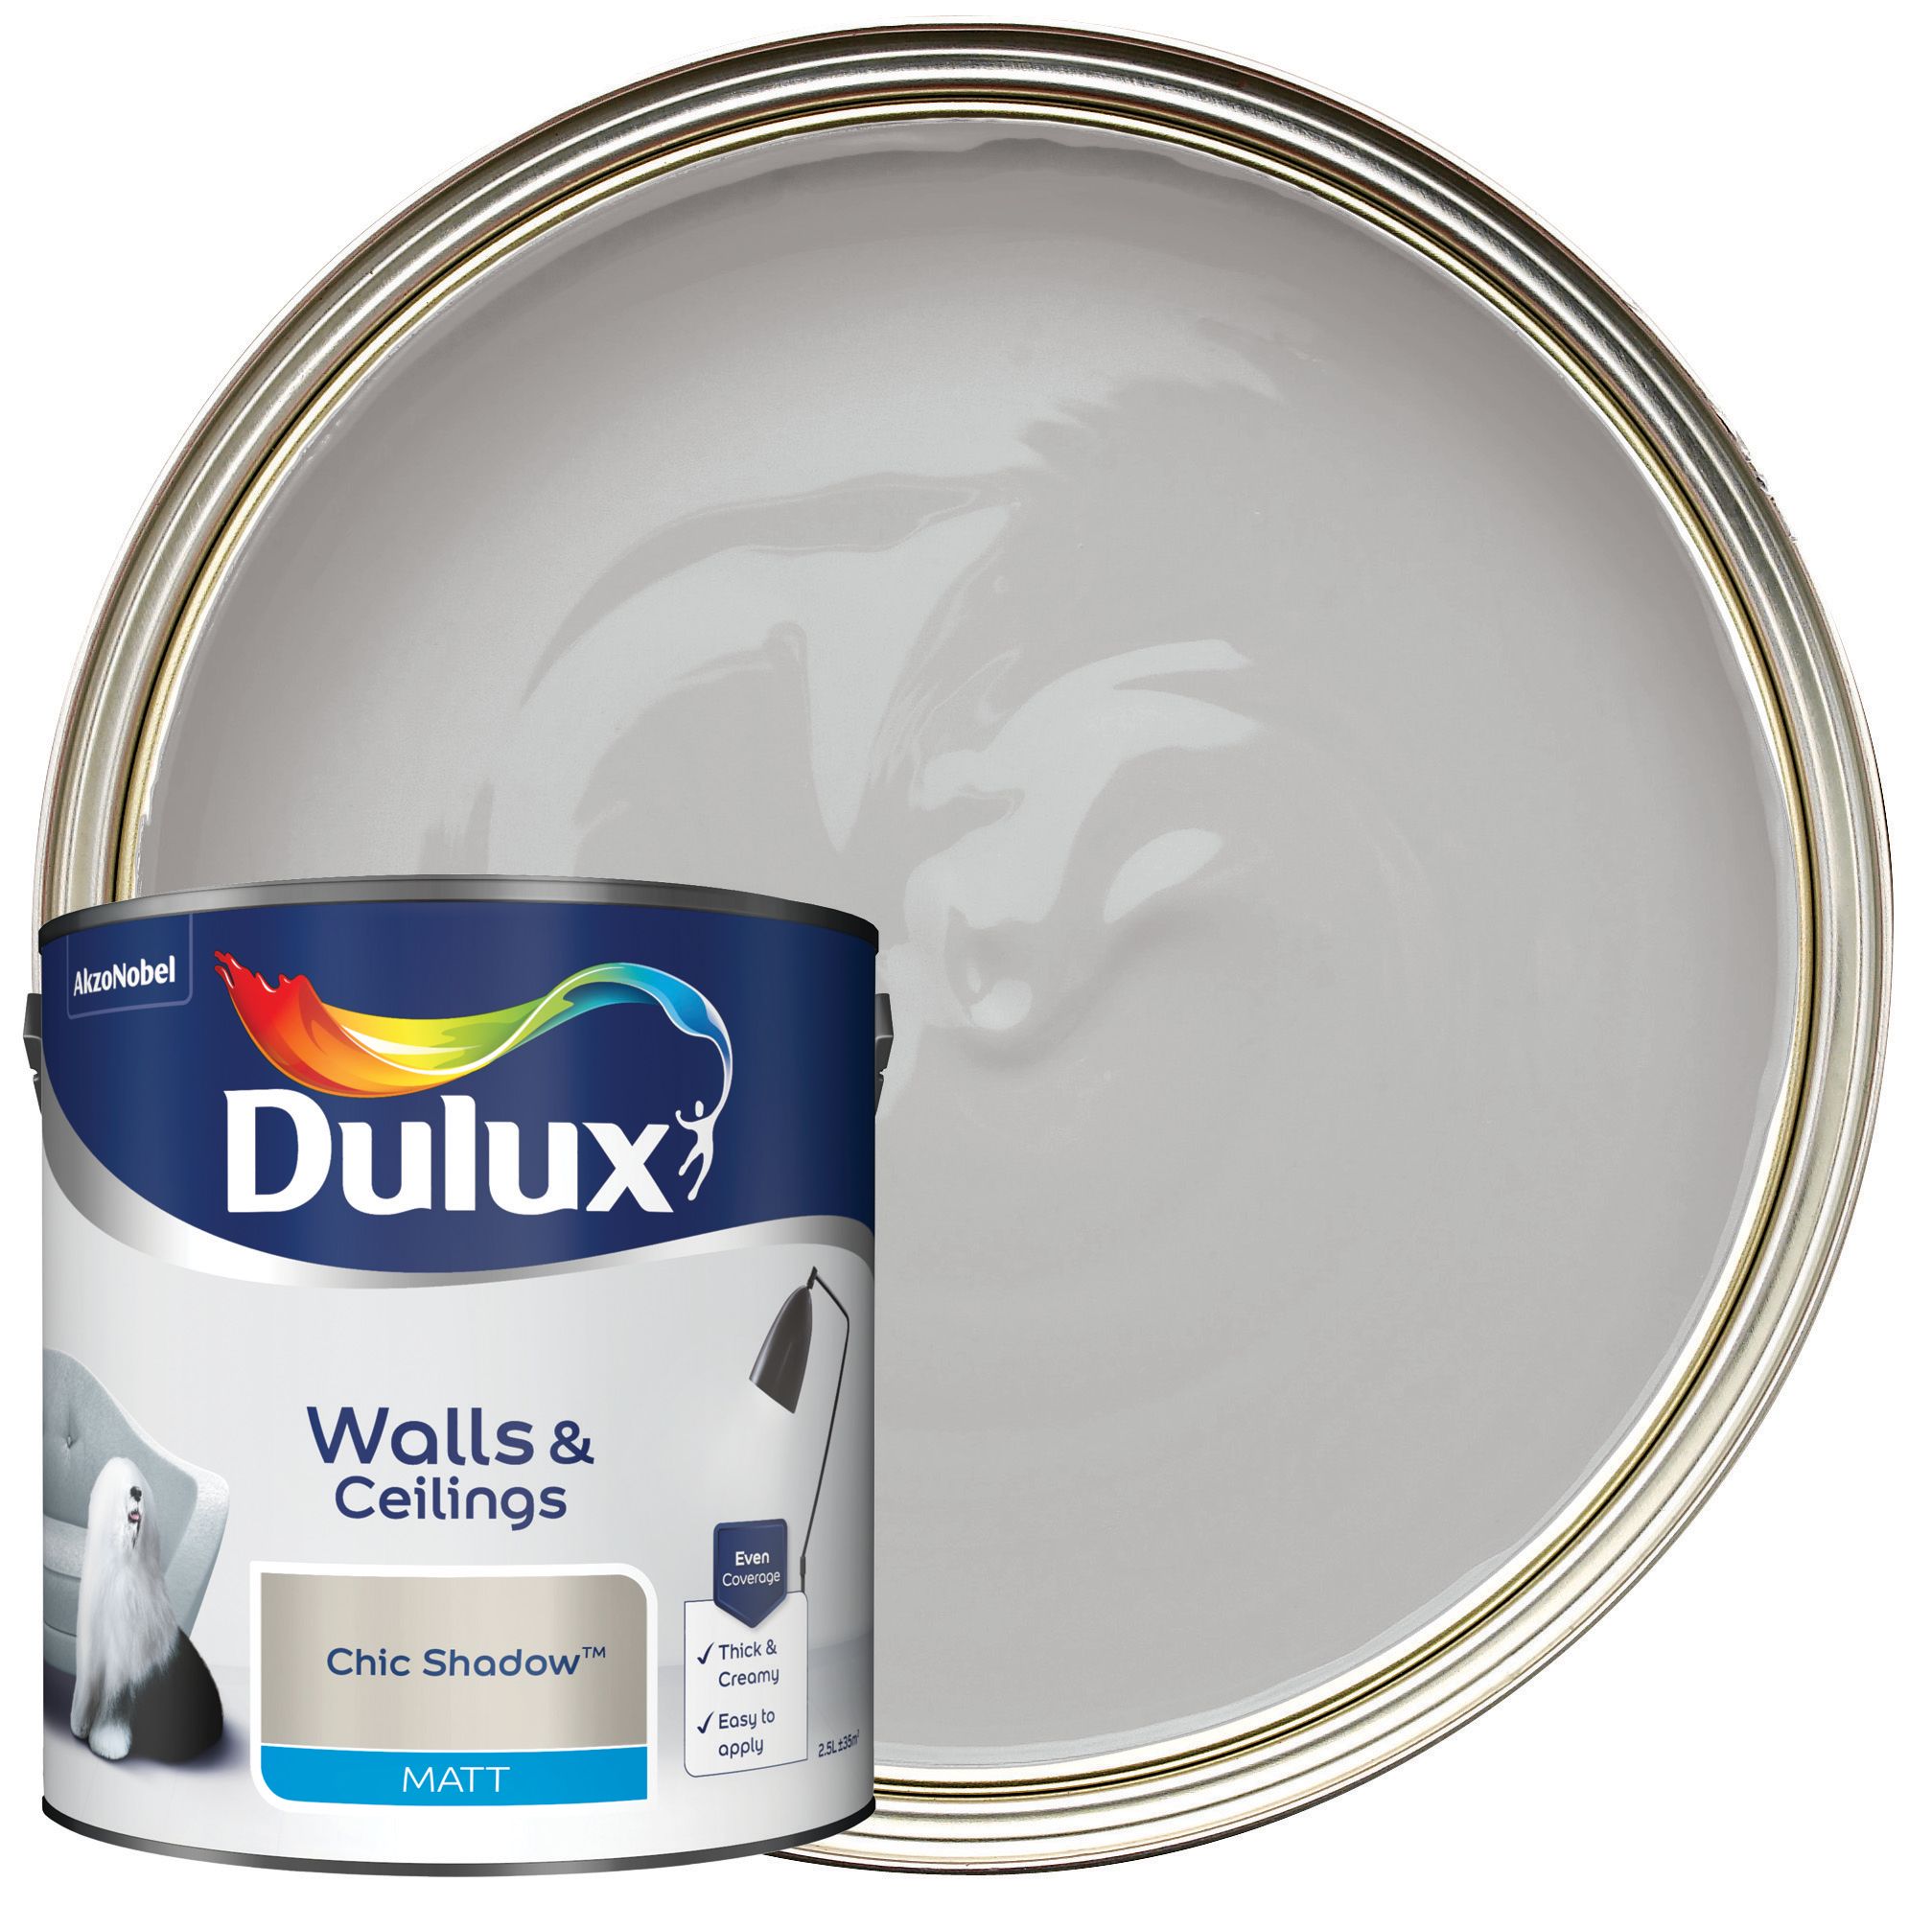 Dulux Matt Emulsion Paint - Chic Shadow - 2.5L